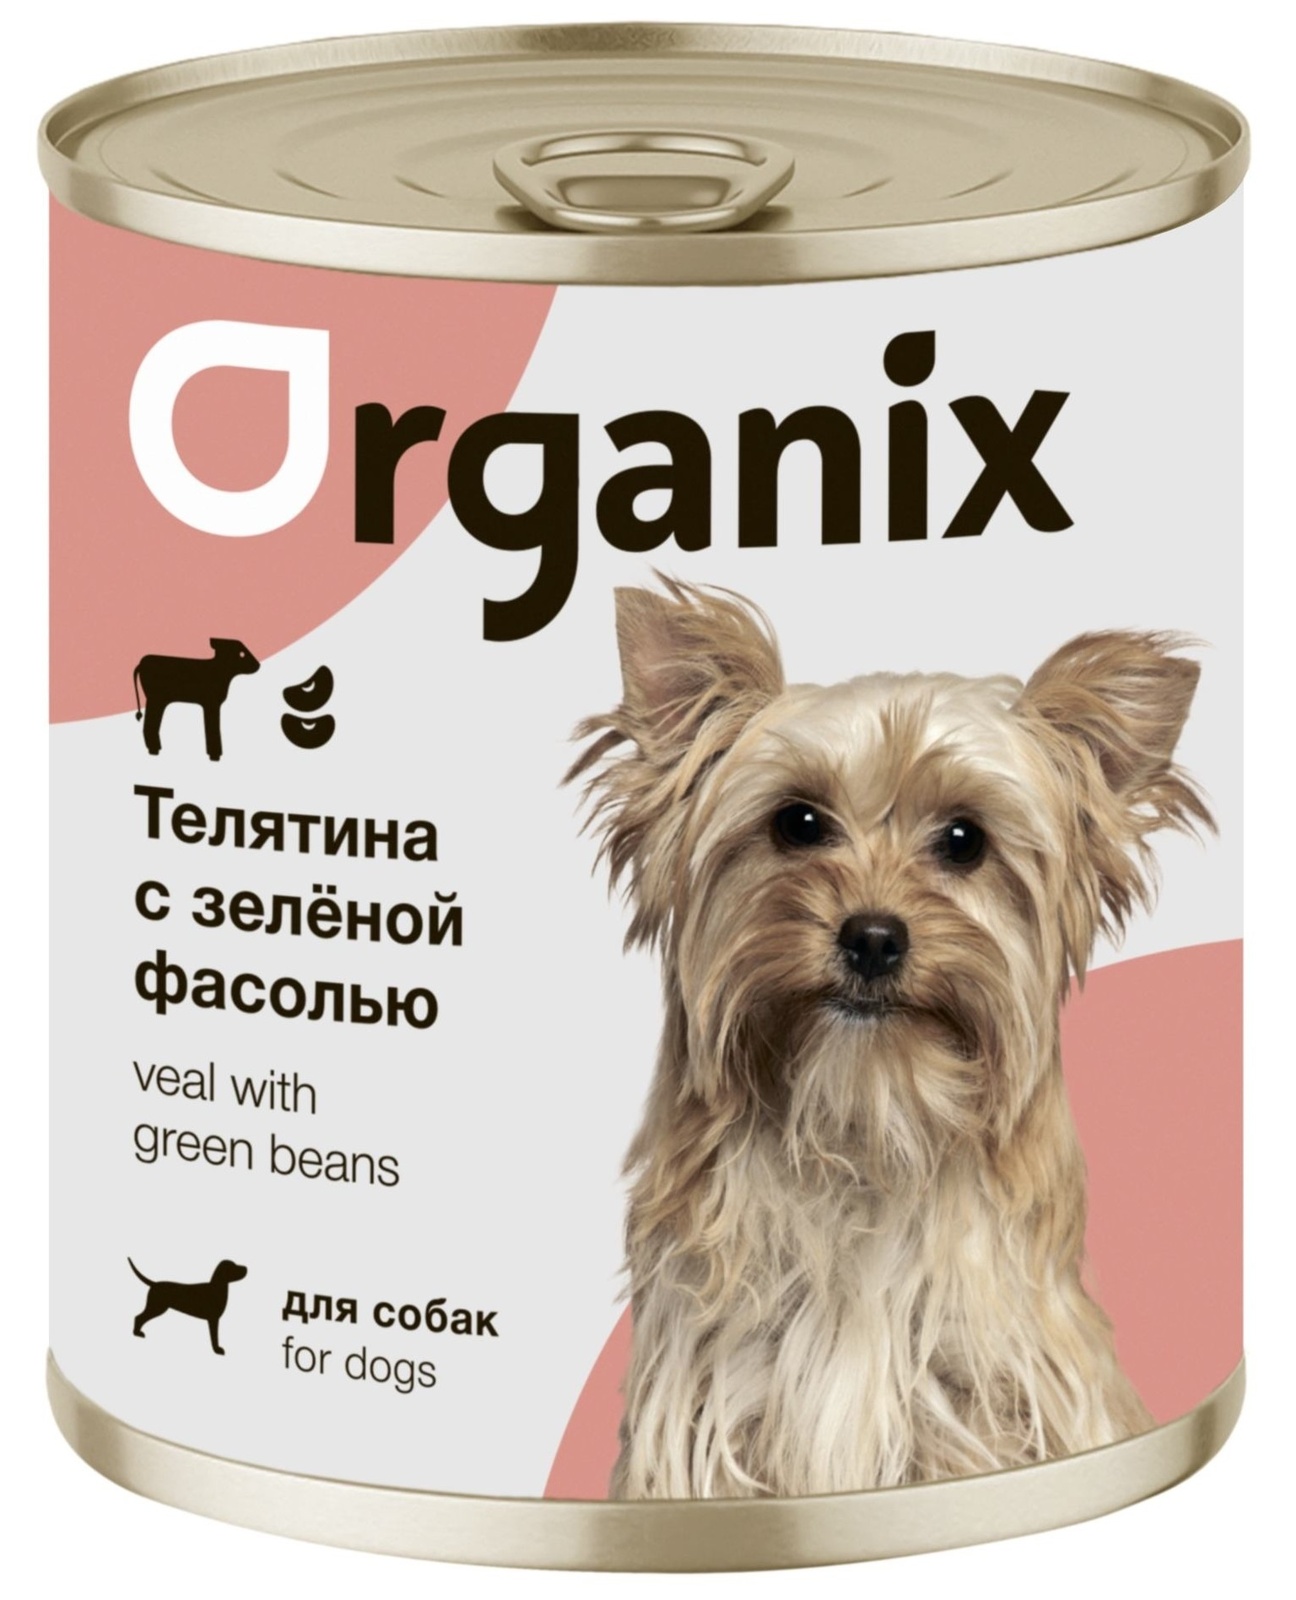 Organix консервы Organix консервы для собак Телятина с зеленой фасолью (100 г) organix консервы organix монобелковые премиум консервы для собак с уткой 100 г